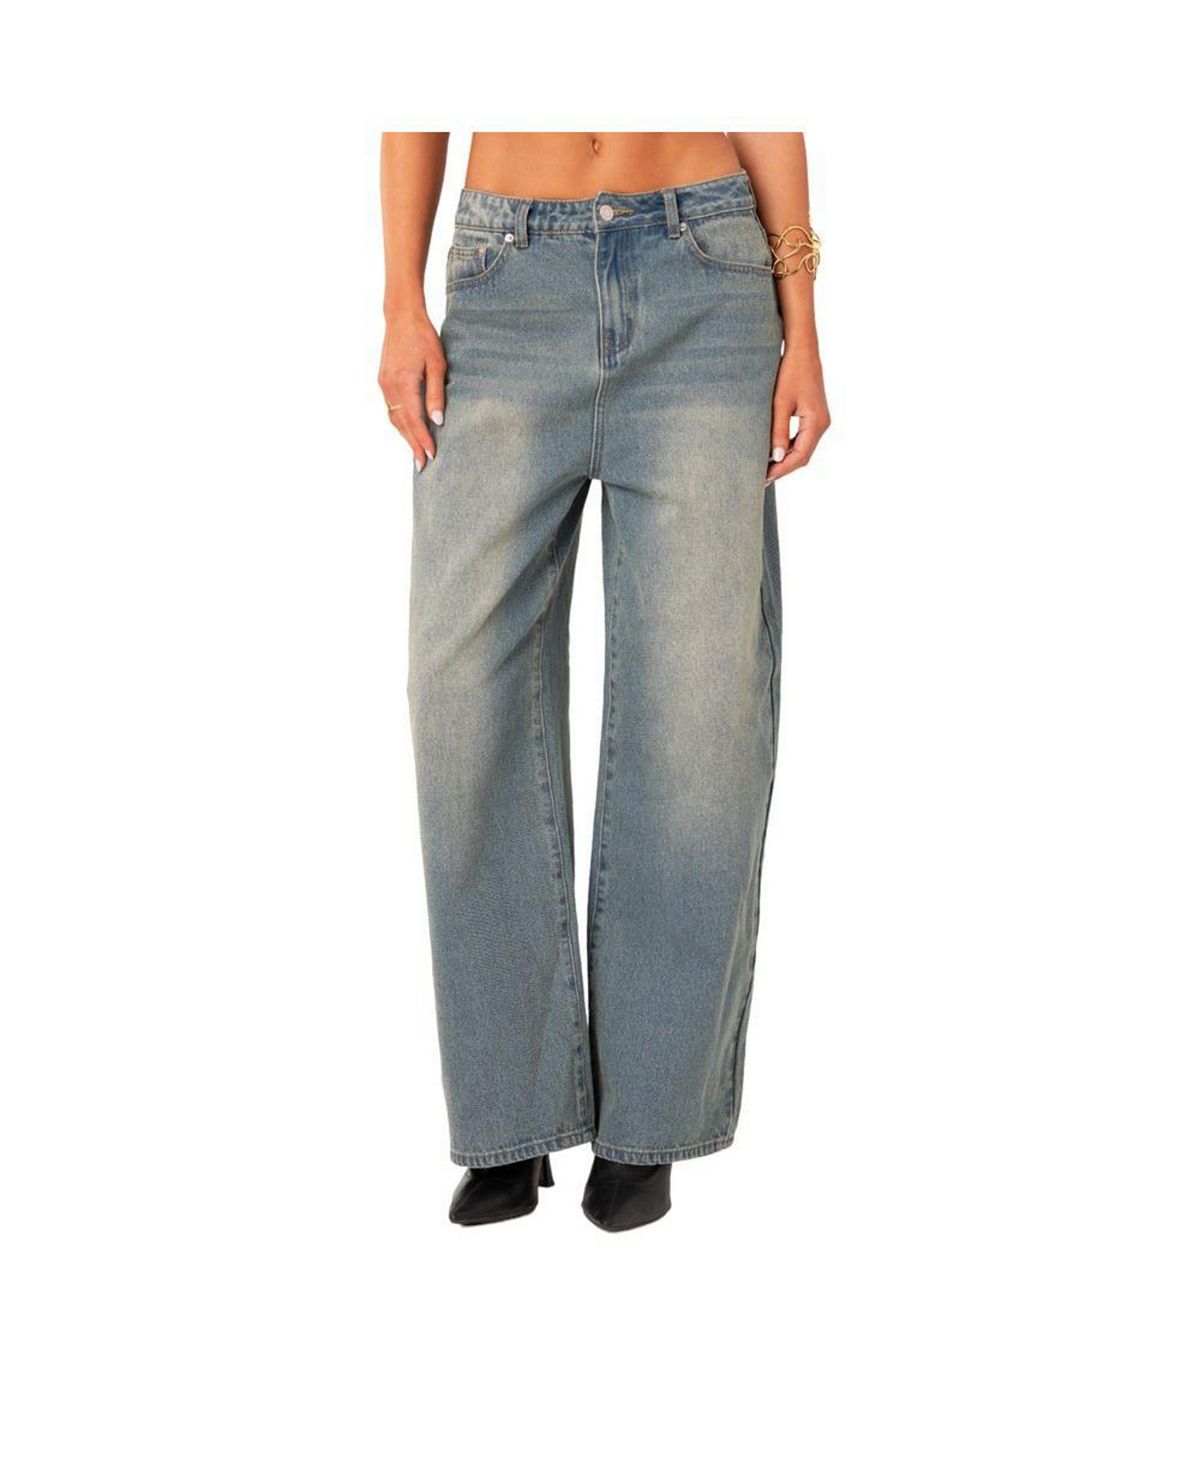 Женские мешковатые джинсы грязной стирки с низкой посадкой Edikted, синий